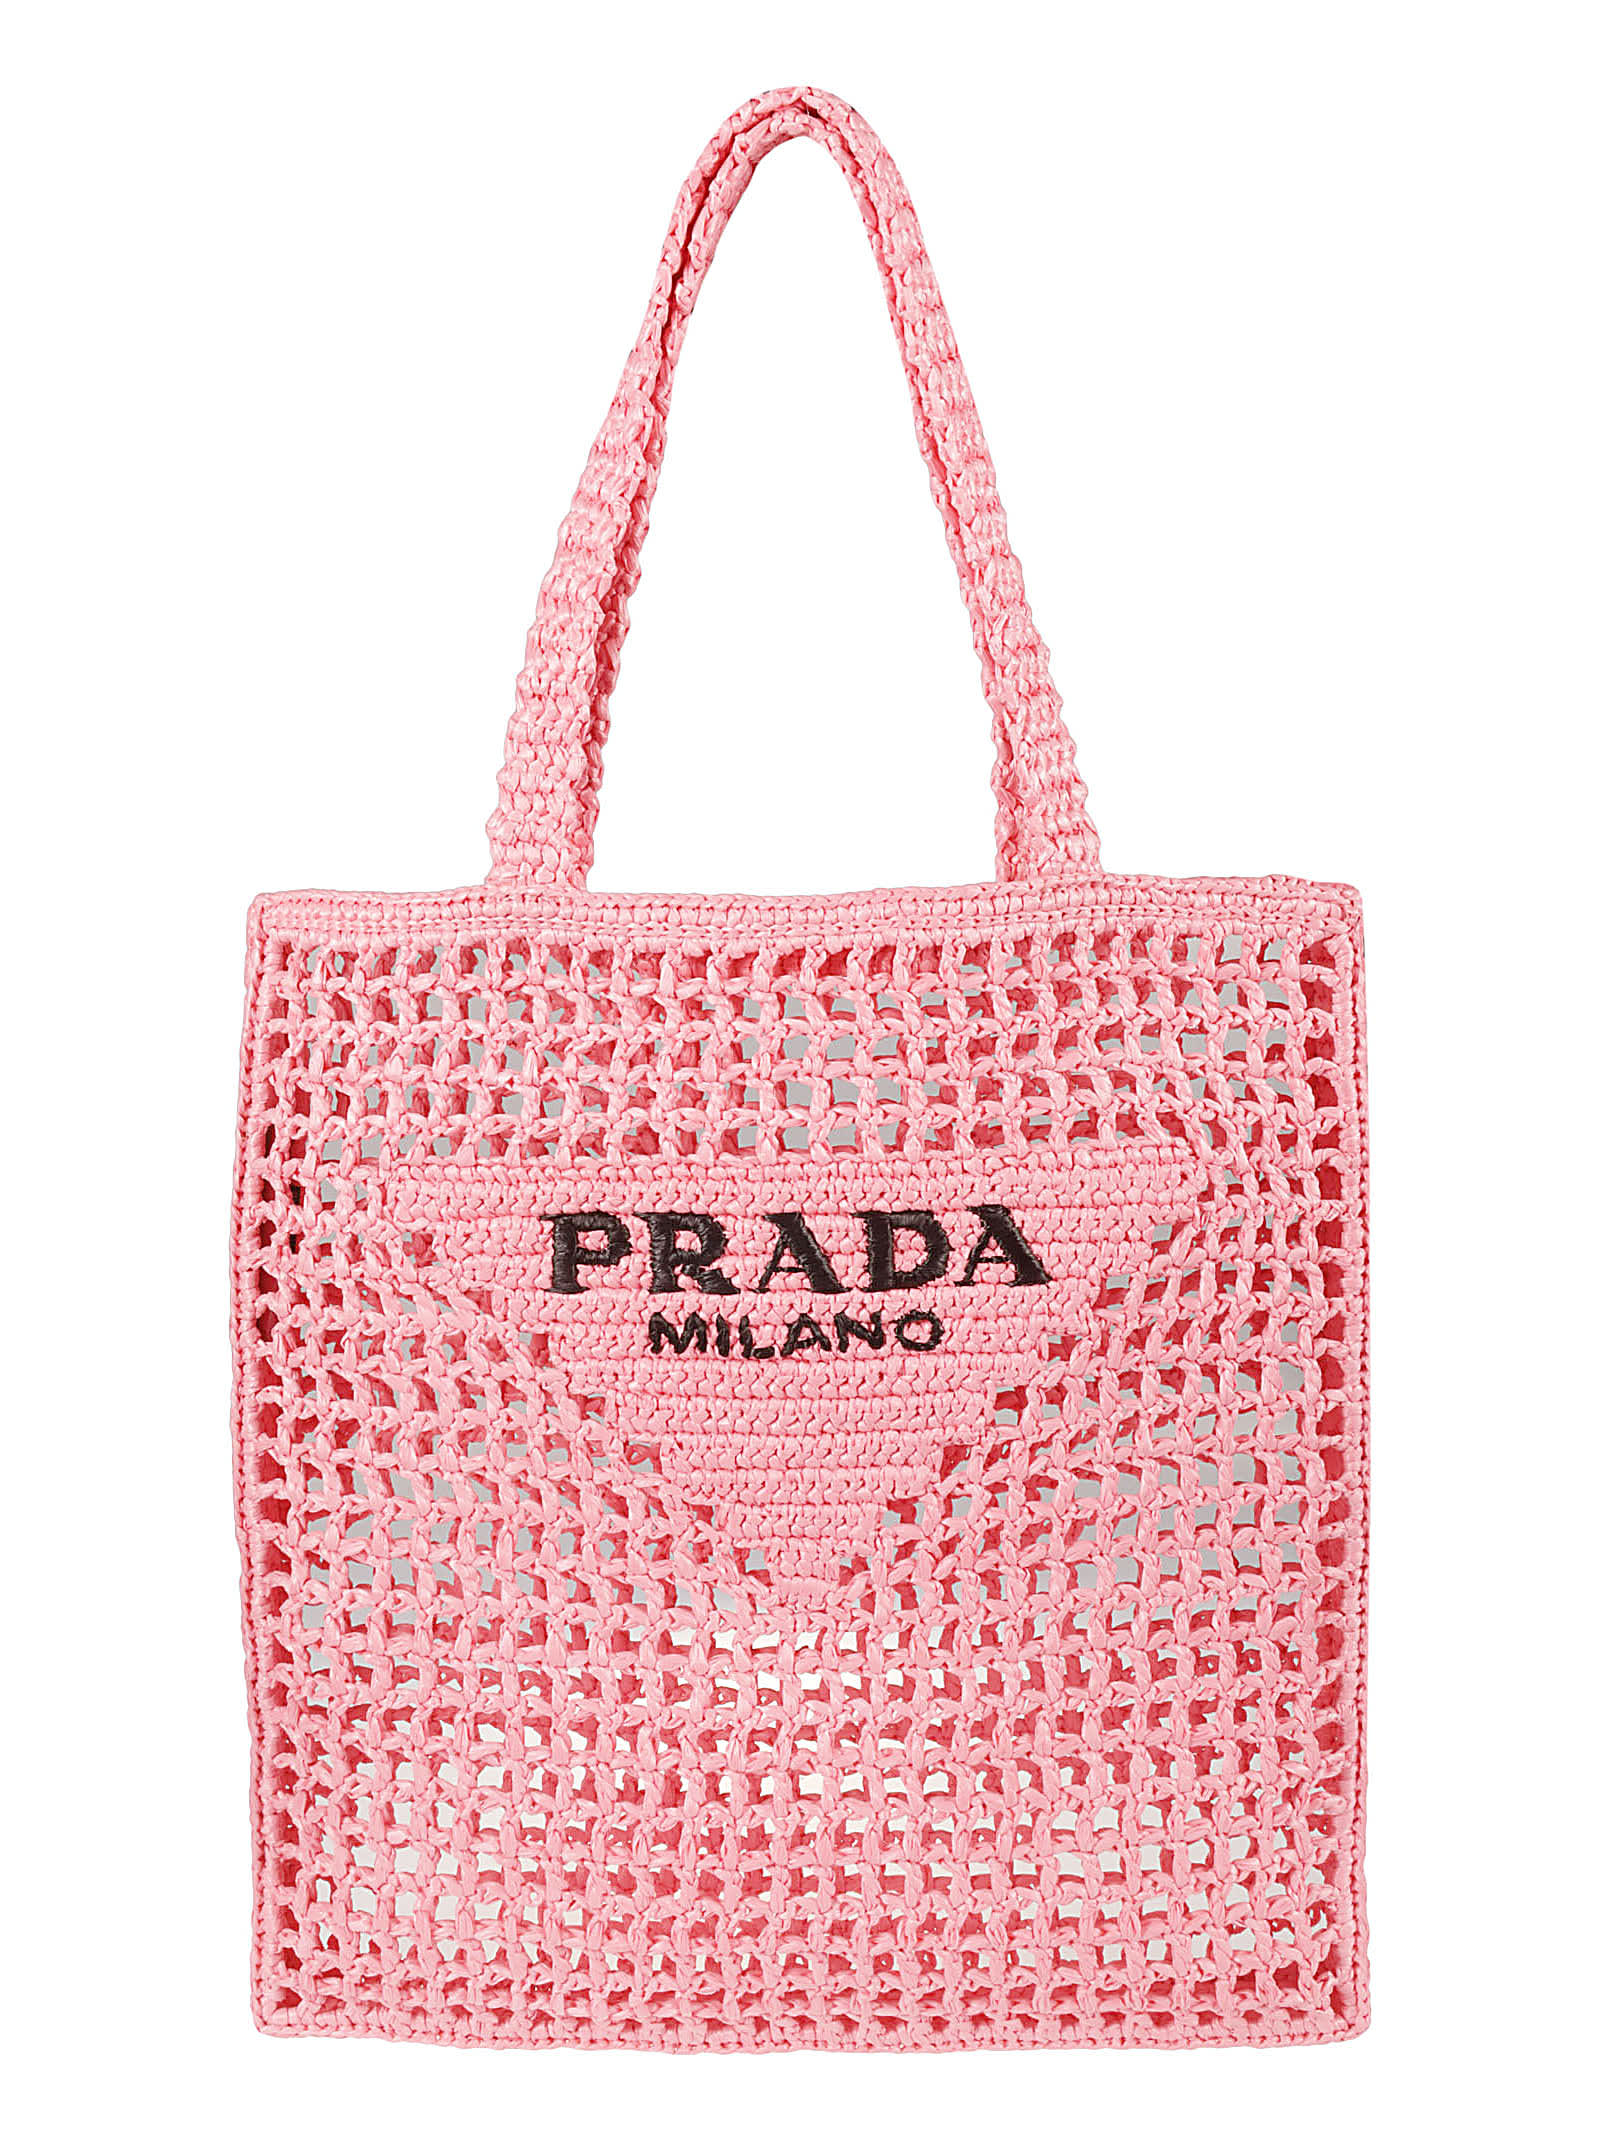 Prada Pink Logoed Crochet Tote Bag | ModeSens